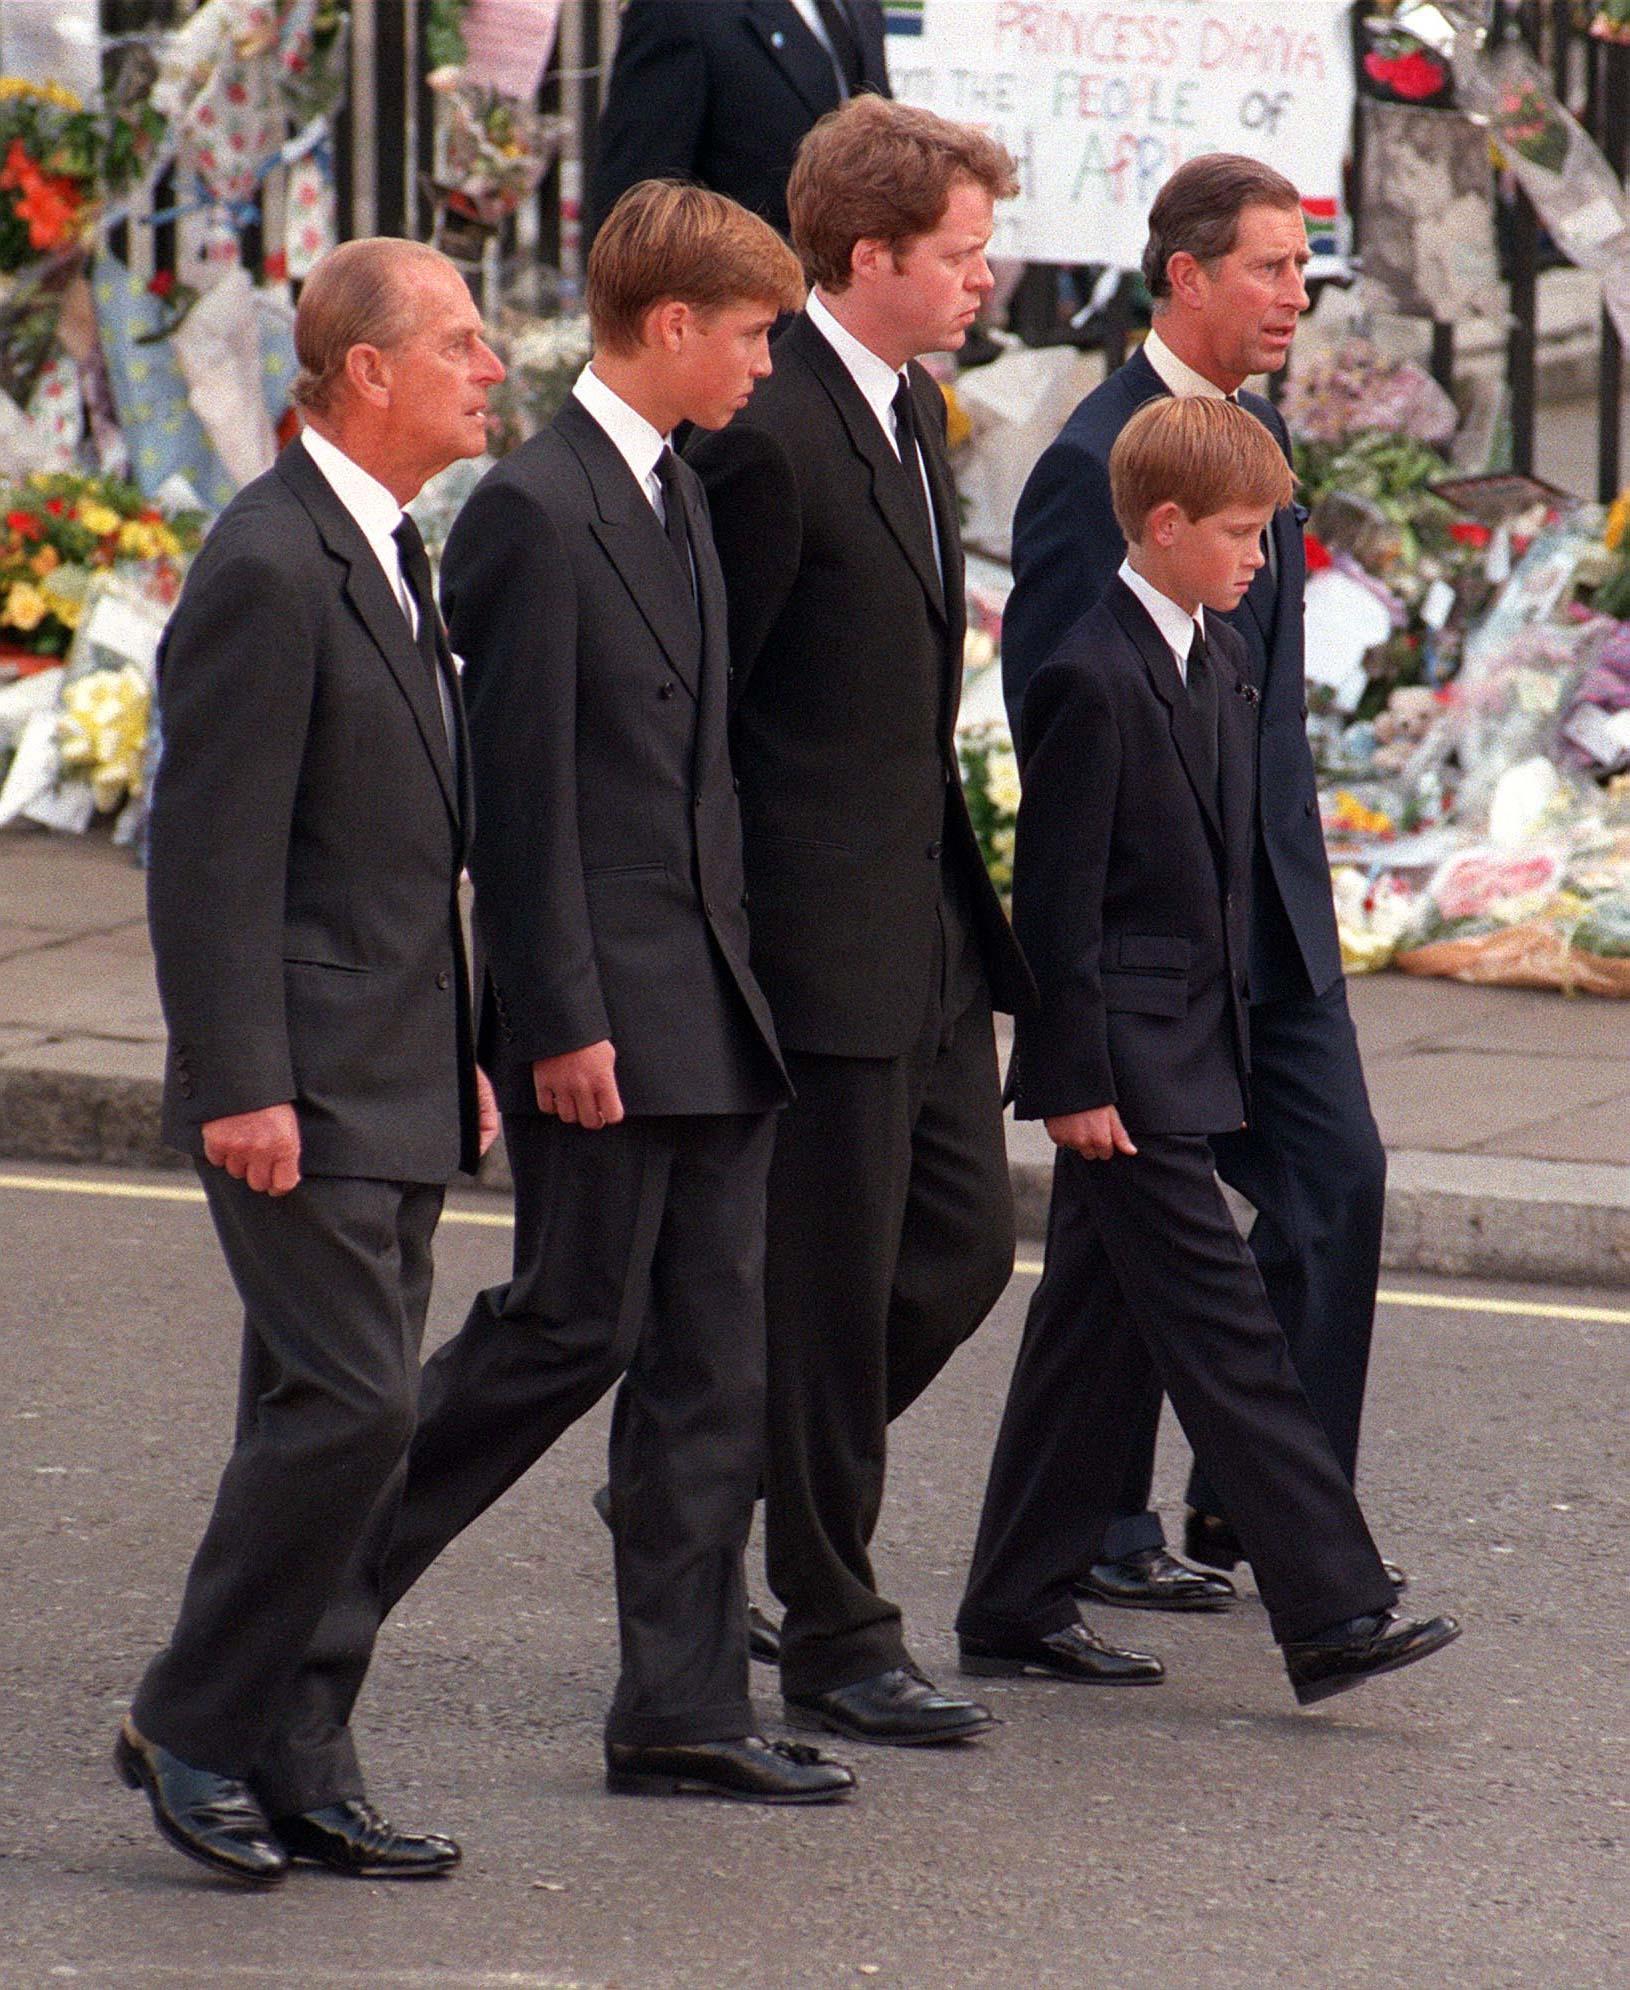 El duque de Edimburgo, el príncipe William, el conde Spencer, el príncipe Harry y el príncipe de Gales siguiendo el ataúd de Diana, princesa de Gales, a la Abadía de Westminster para su funeral, en septiembre de 1997. | Foto: Getty Images